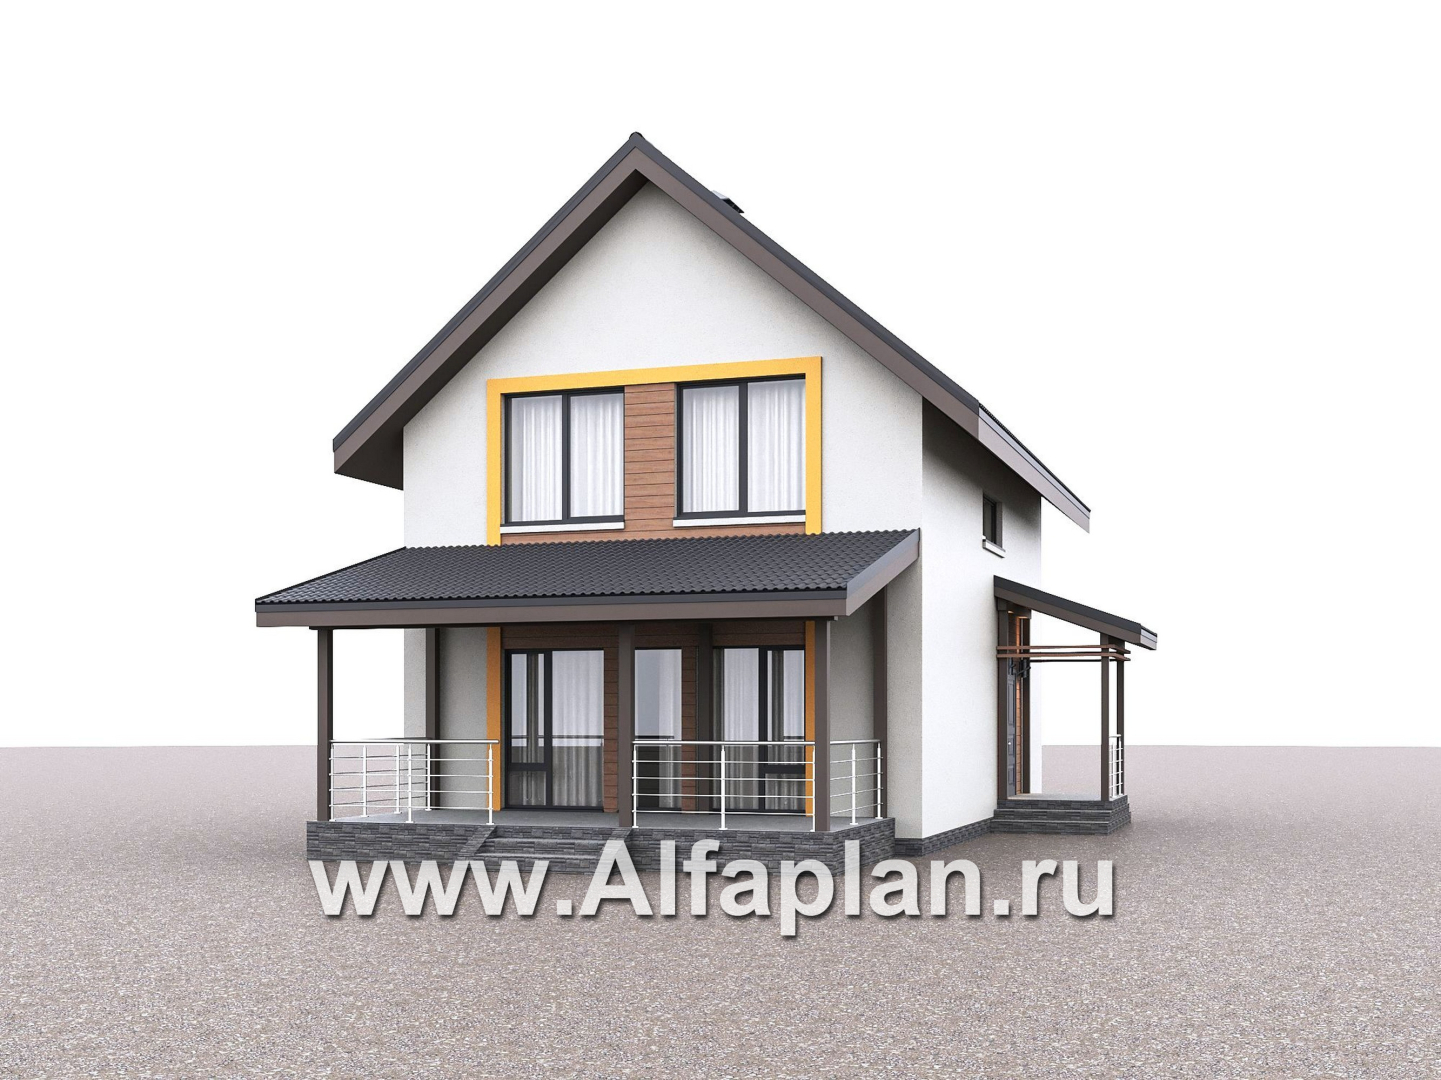 Проекты домов Альфаплан - "Викинг" - проект дома, 2 этажа, с сауной и с террасой, в скандинавском стиле - дополнительное изображение №3